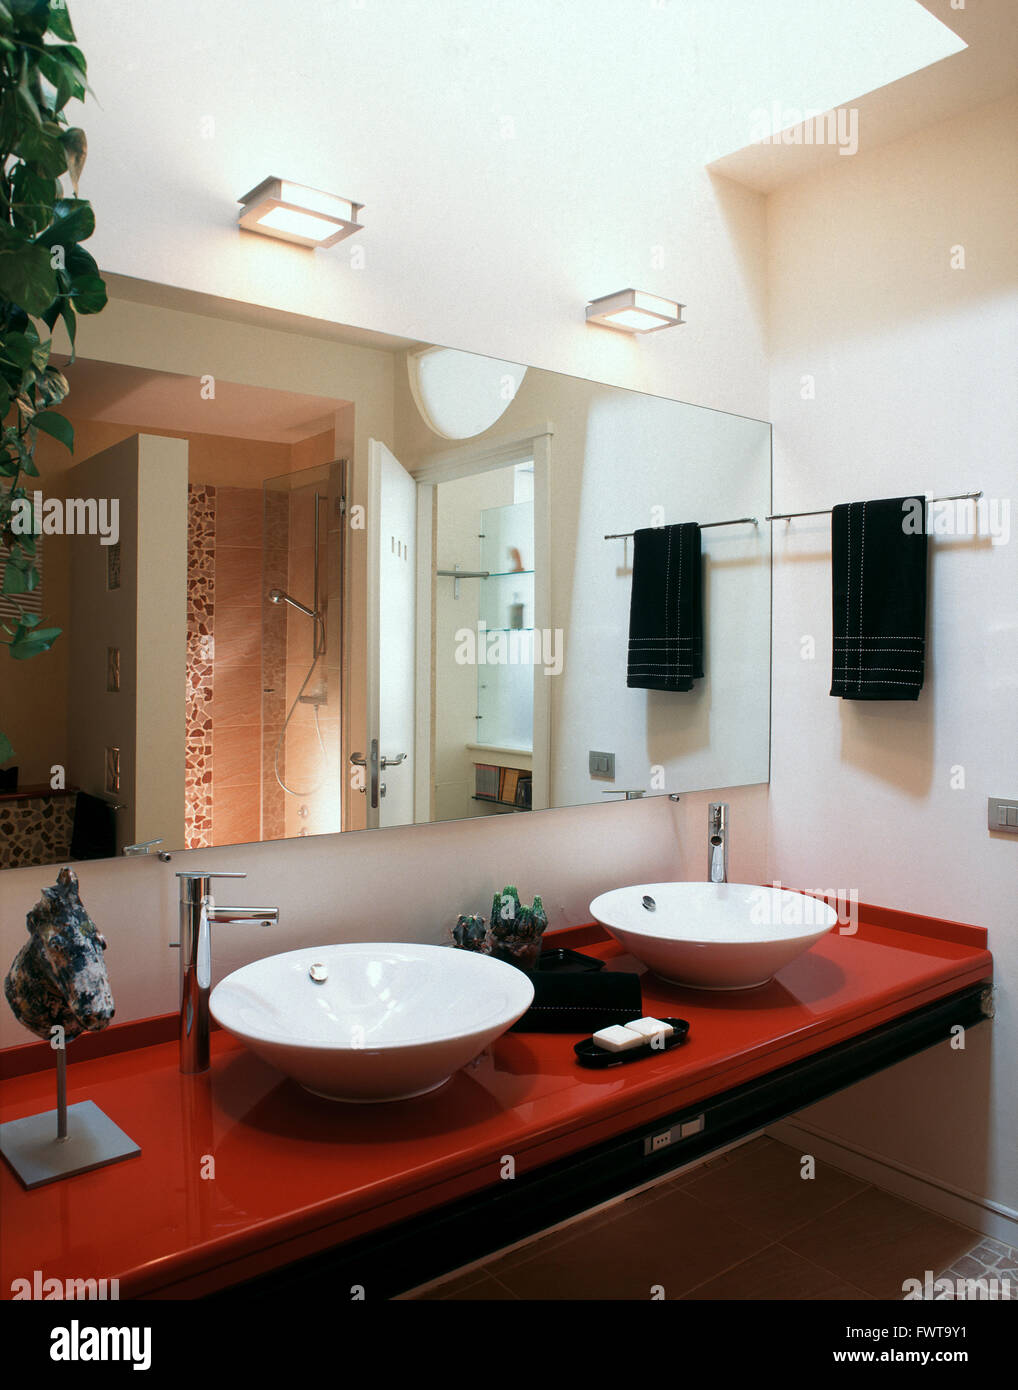 zwei Waschbecken auf der rote Arbeitsplatte im modernen Bad Stockfoto